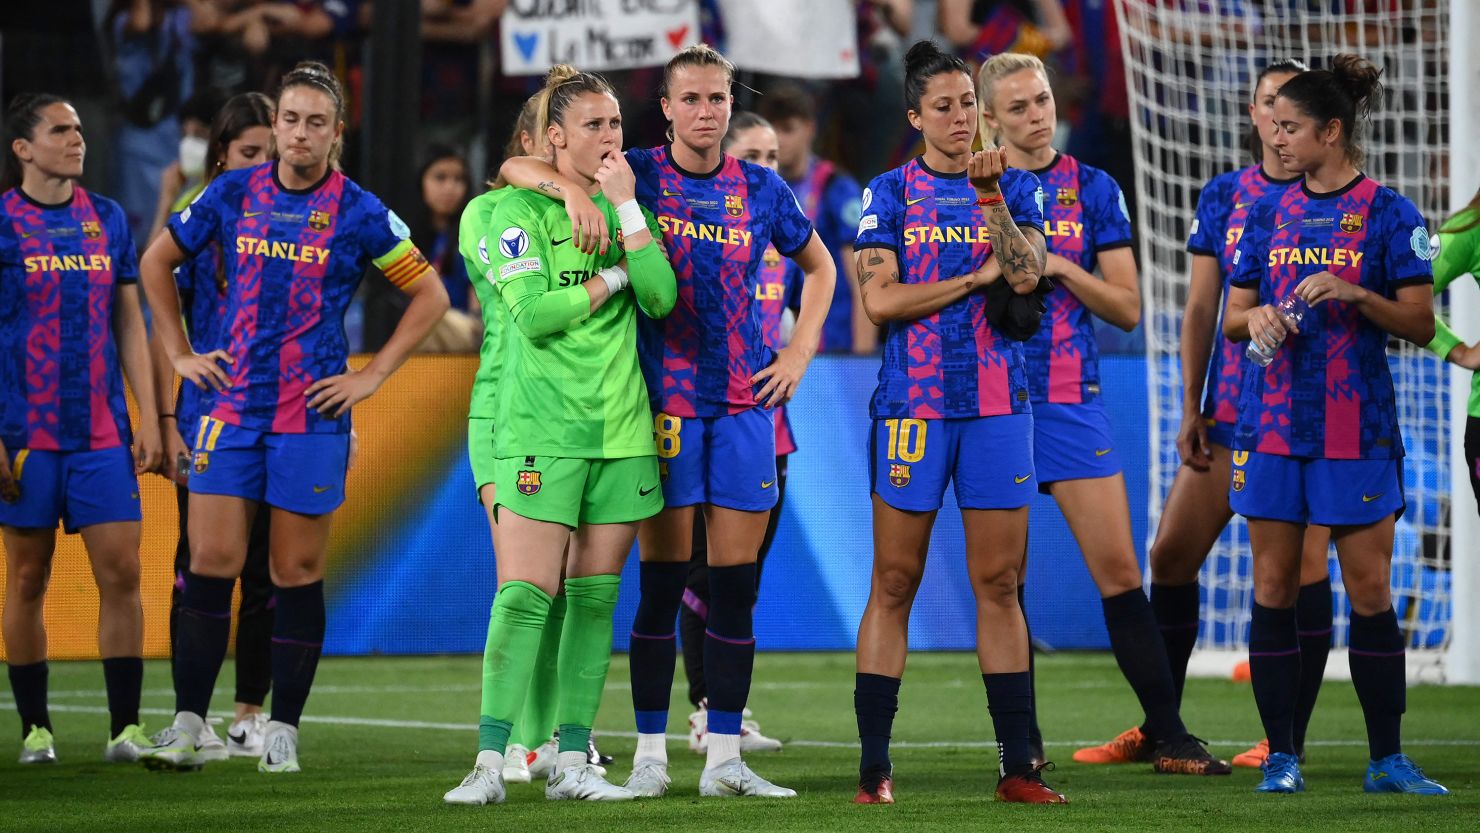 Barcelona was beaten 3-1 by Lyon in last season's Women's Champions League final.